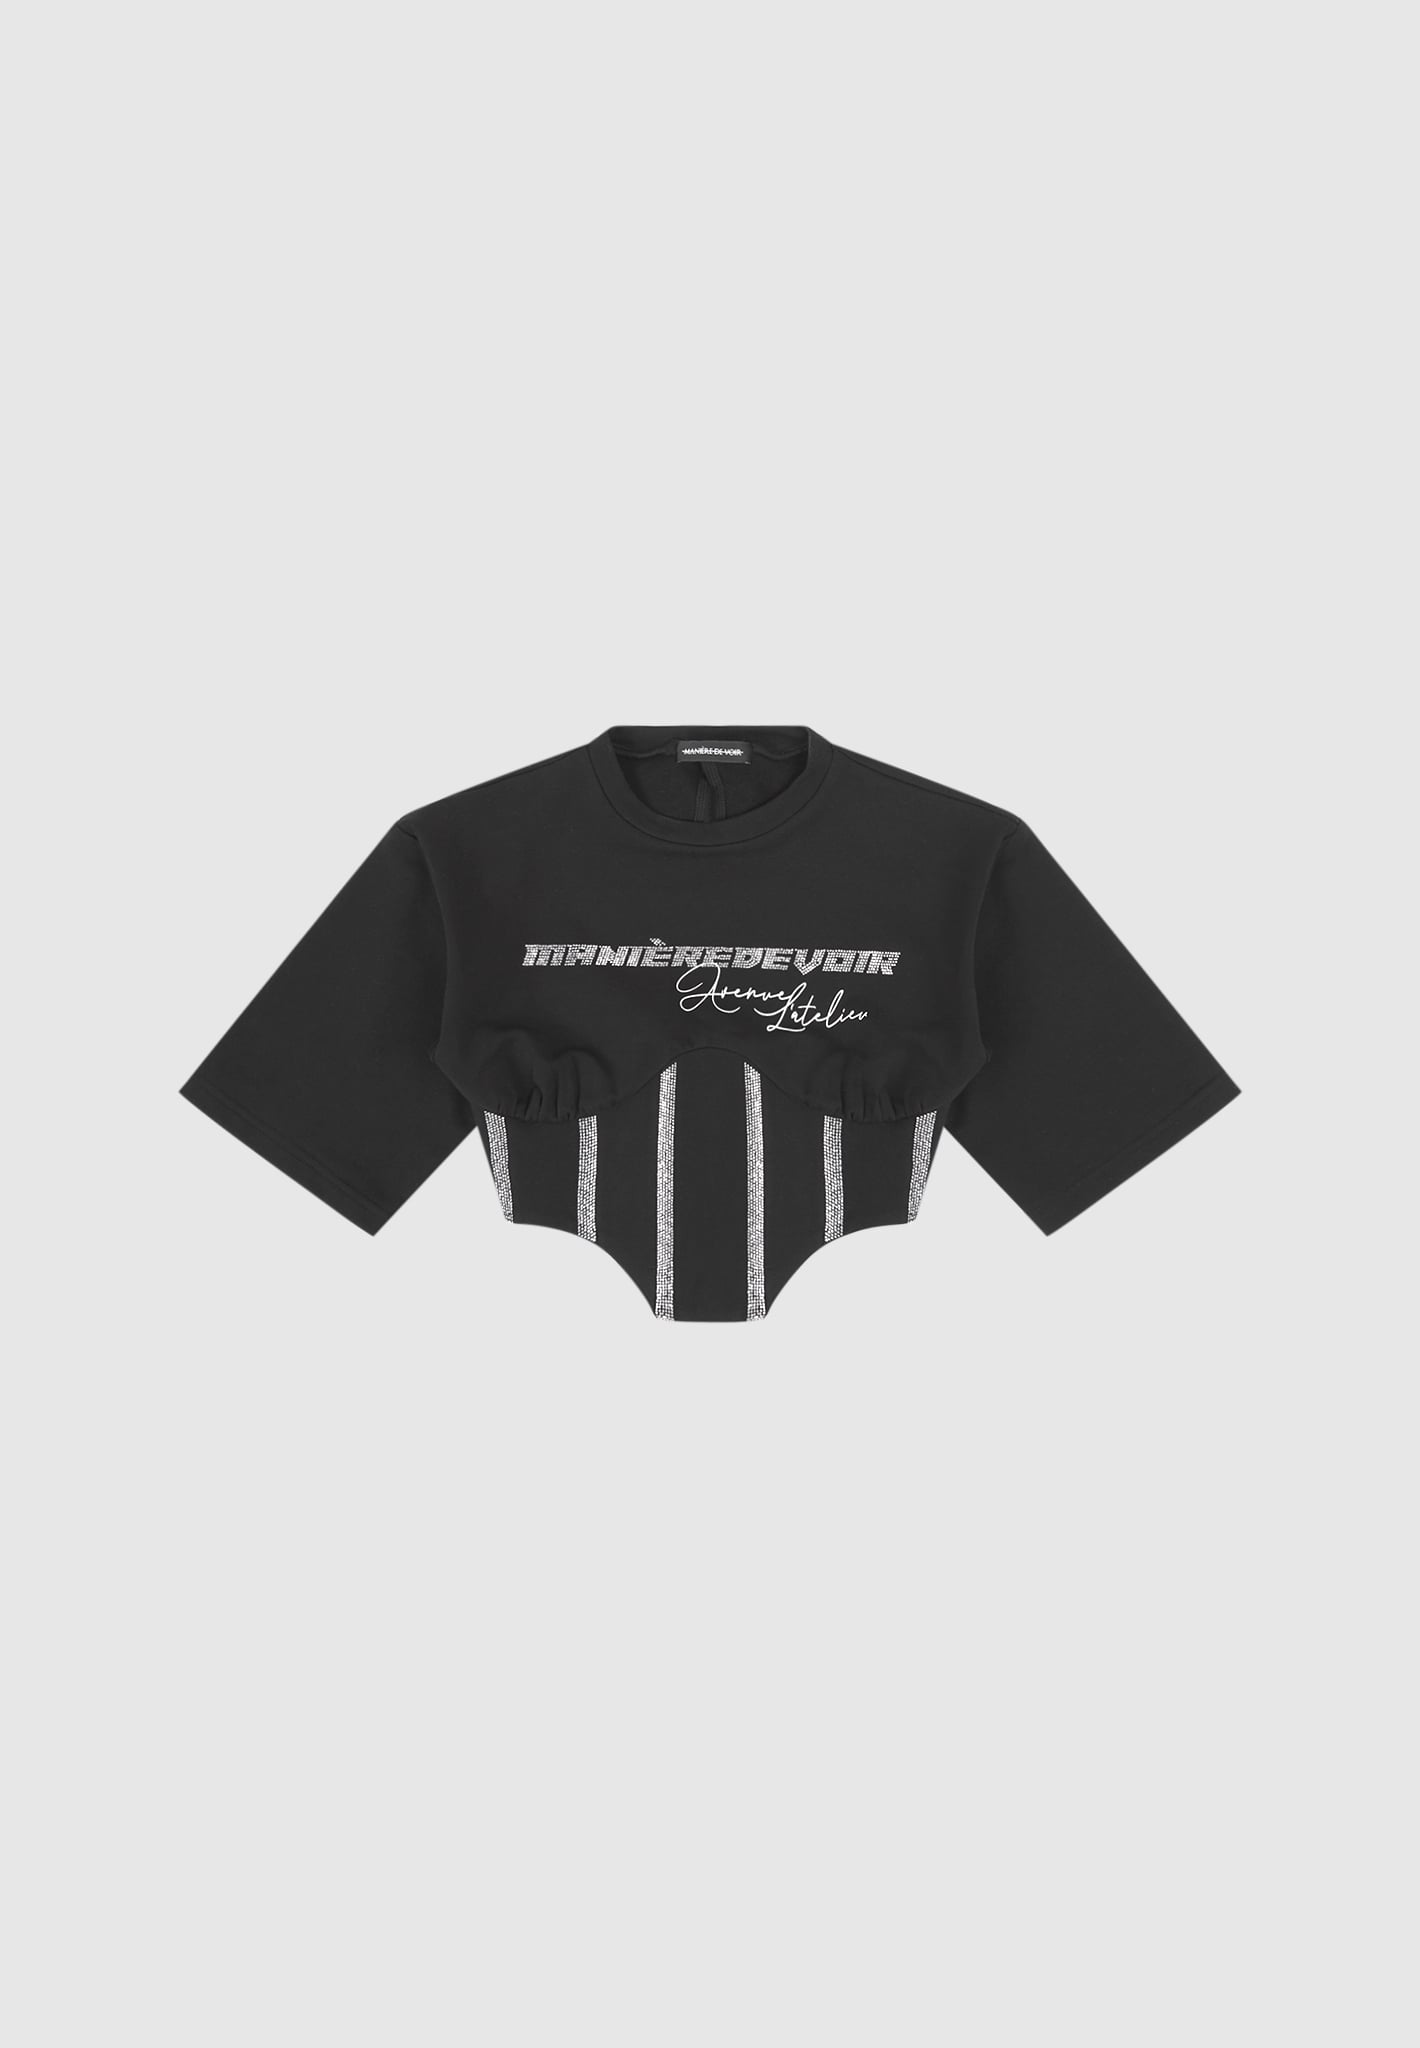 Rhinestone Lace Up Corset T-Shirt - Black